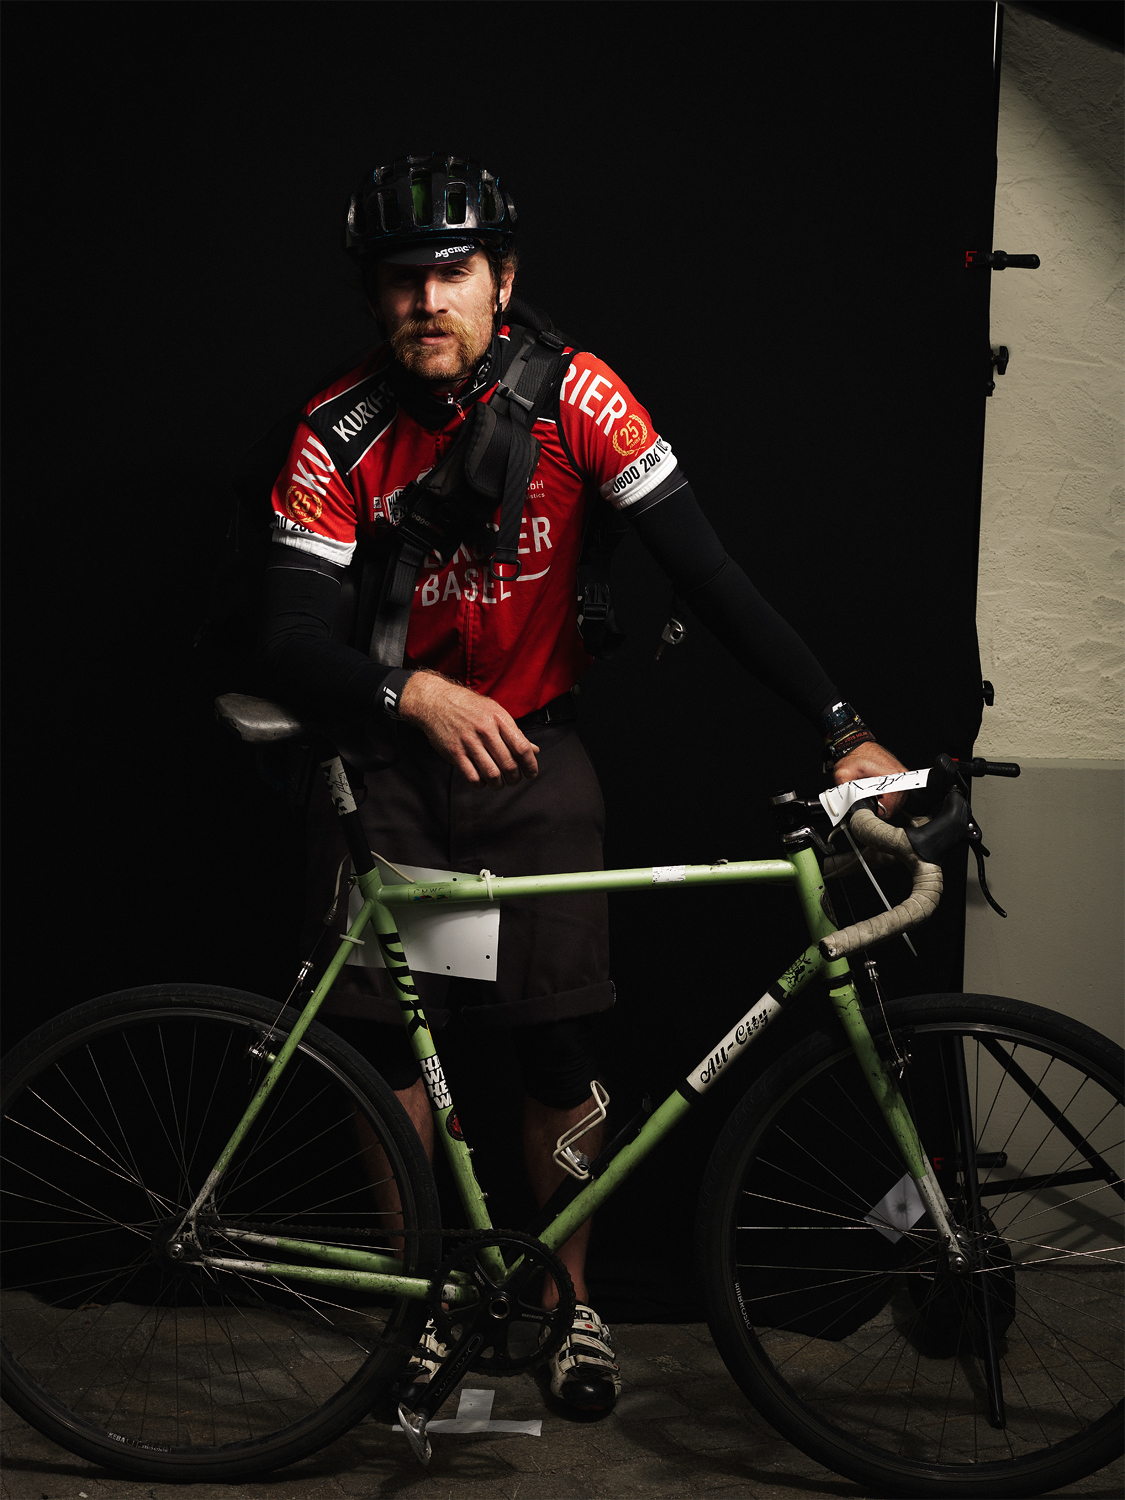 portrait Bike sport Switzerland germany man woman messengers